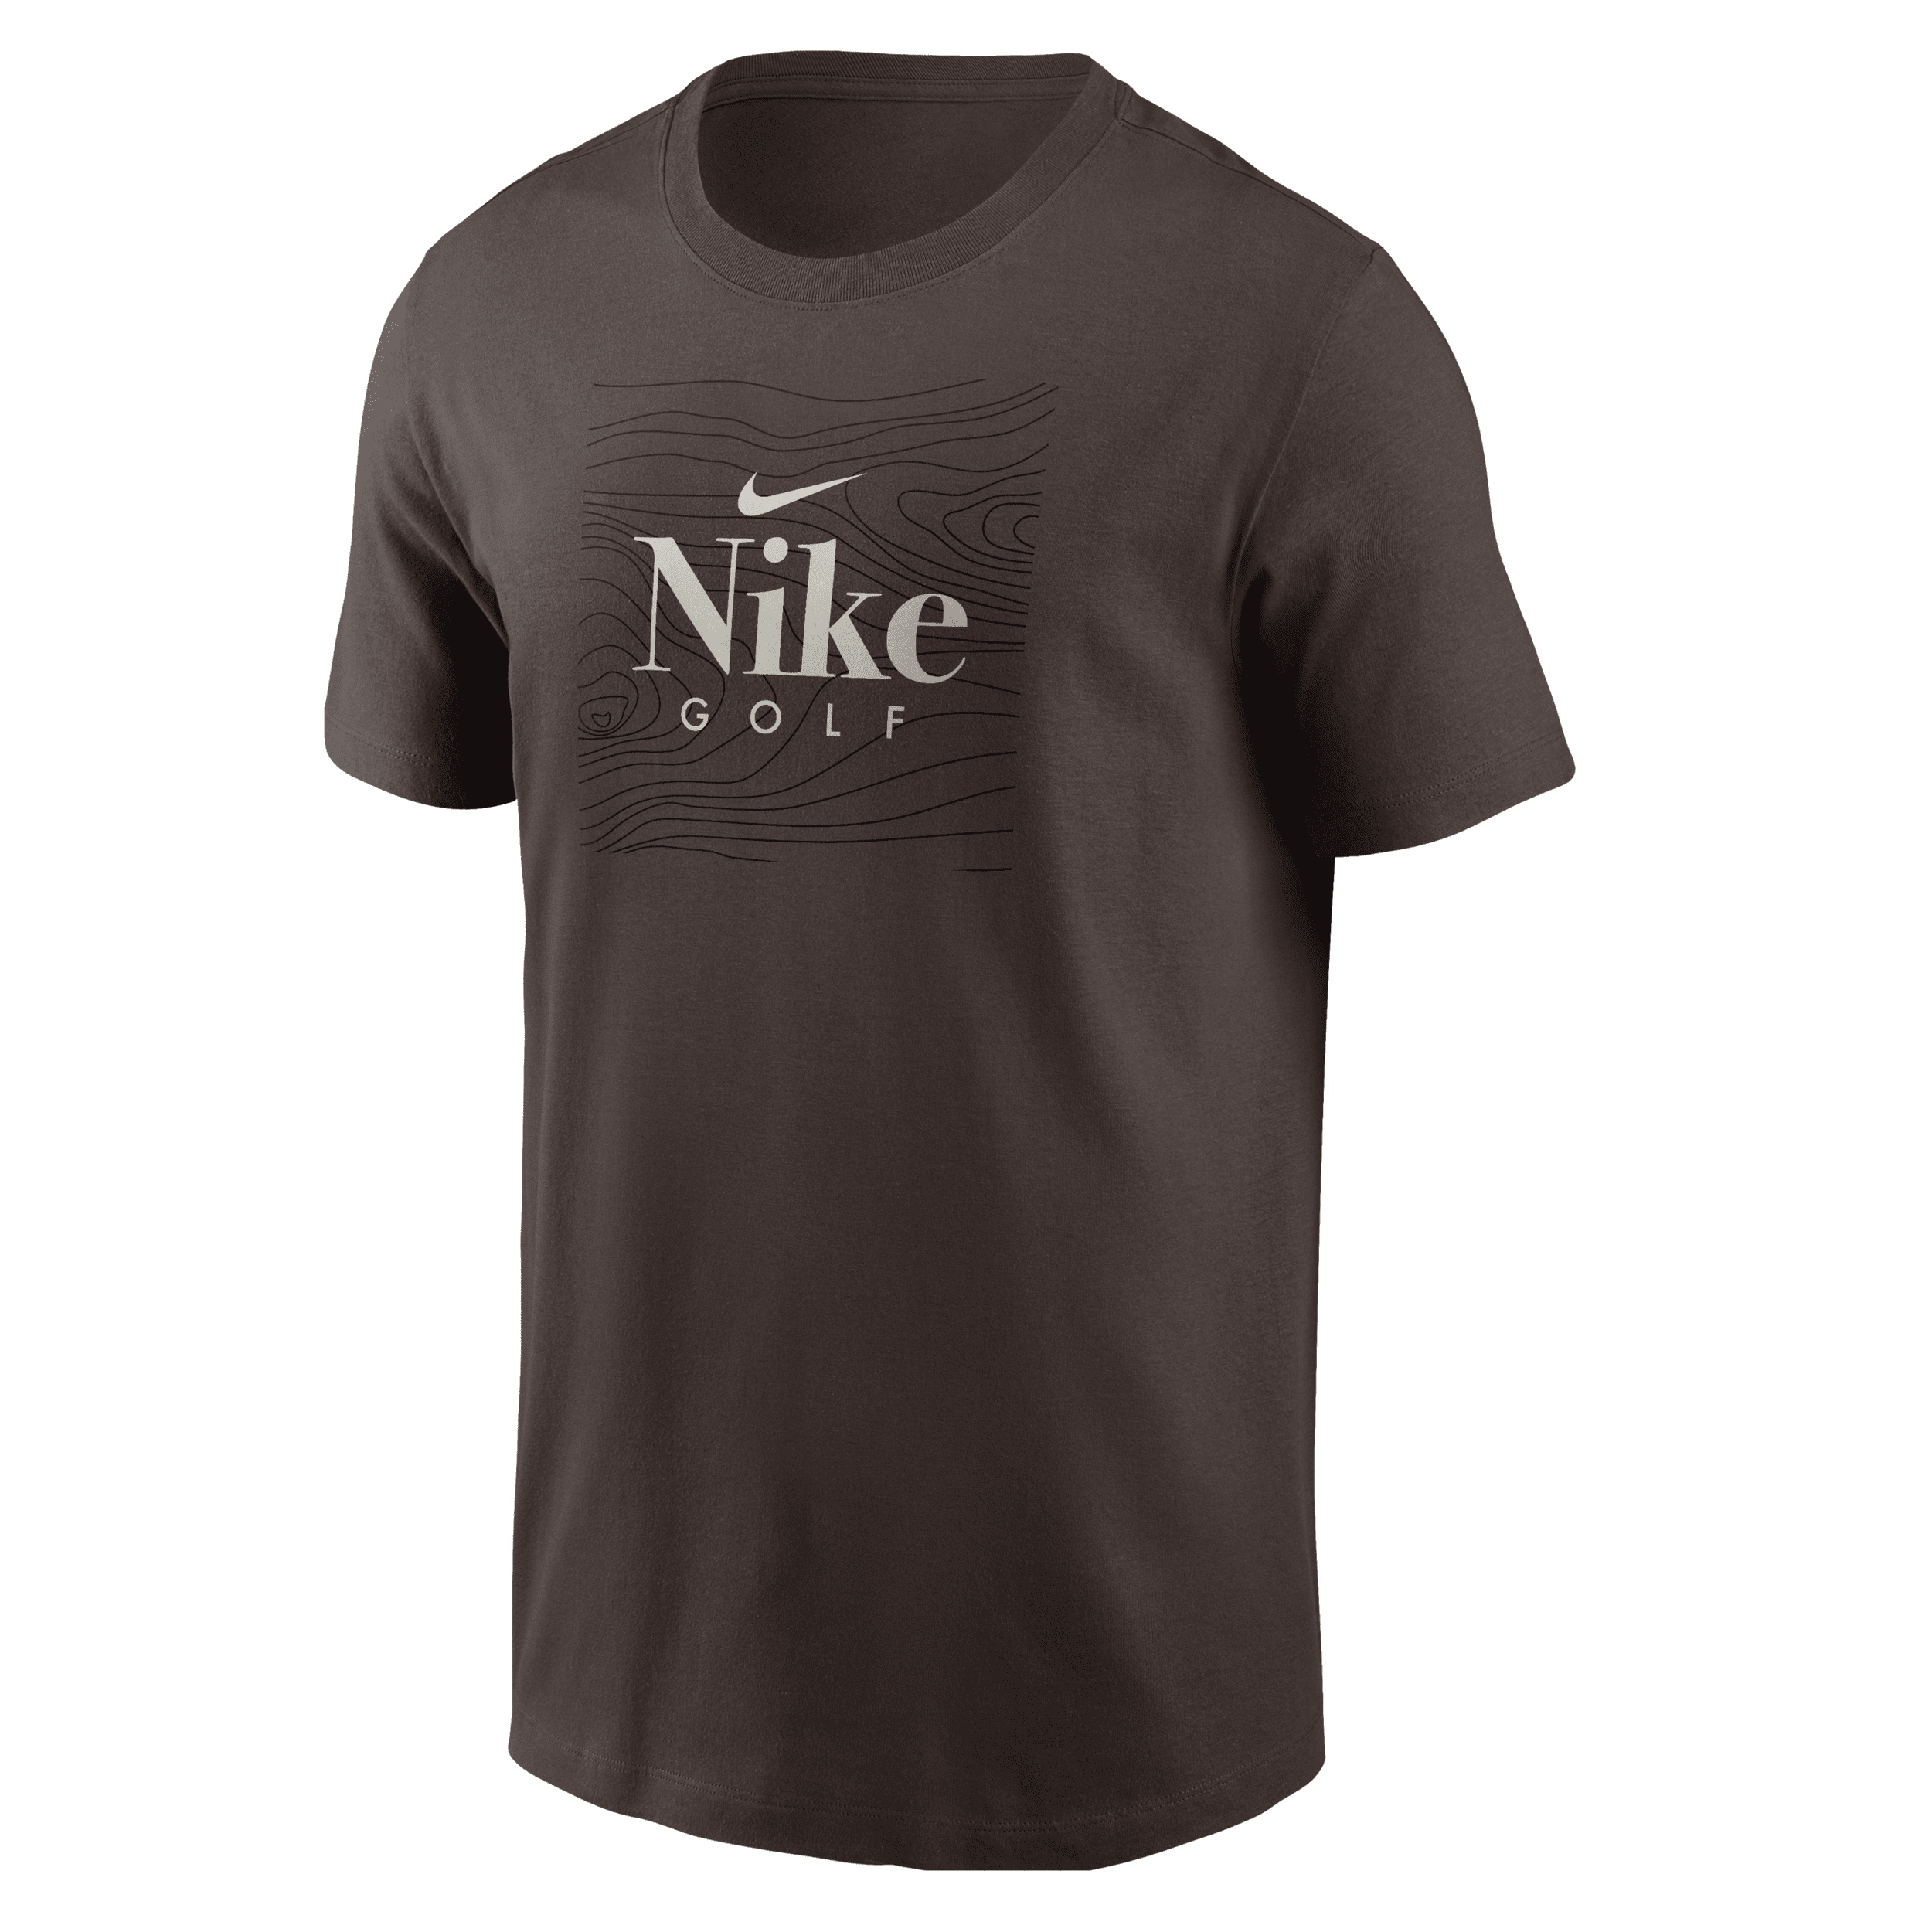 Nike Men's Golf T-shirt In Brown